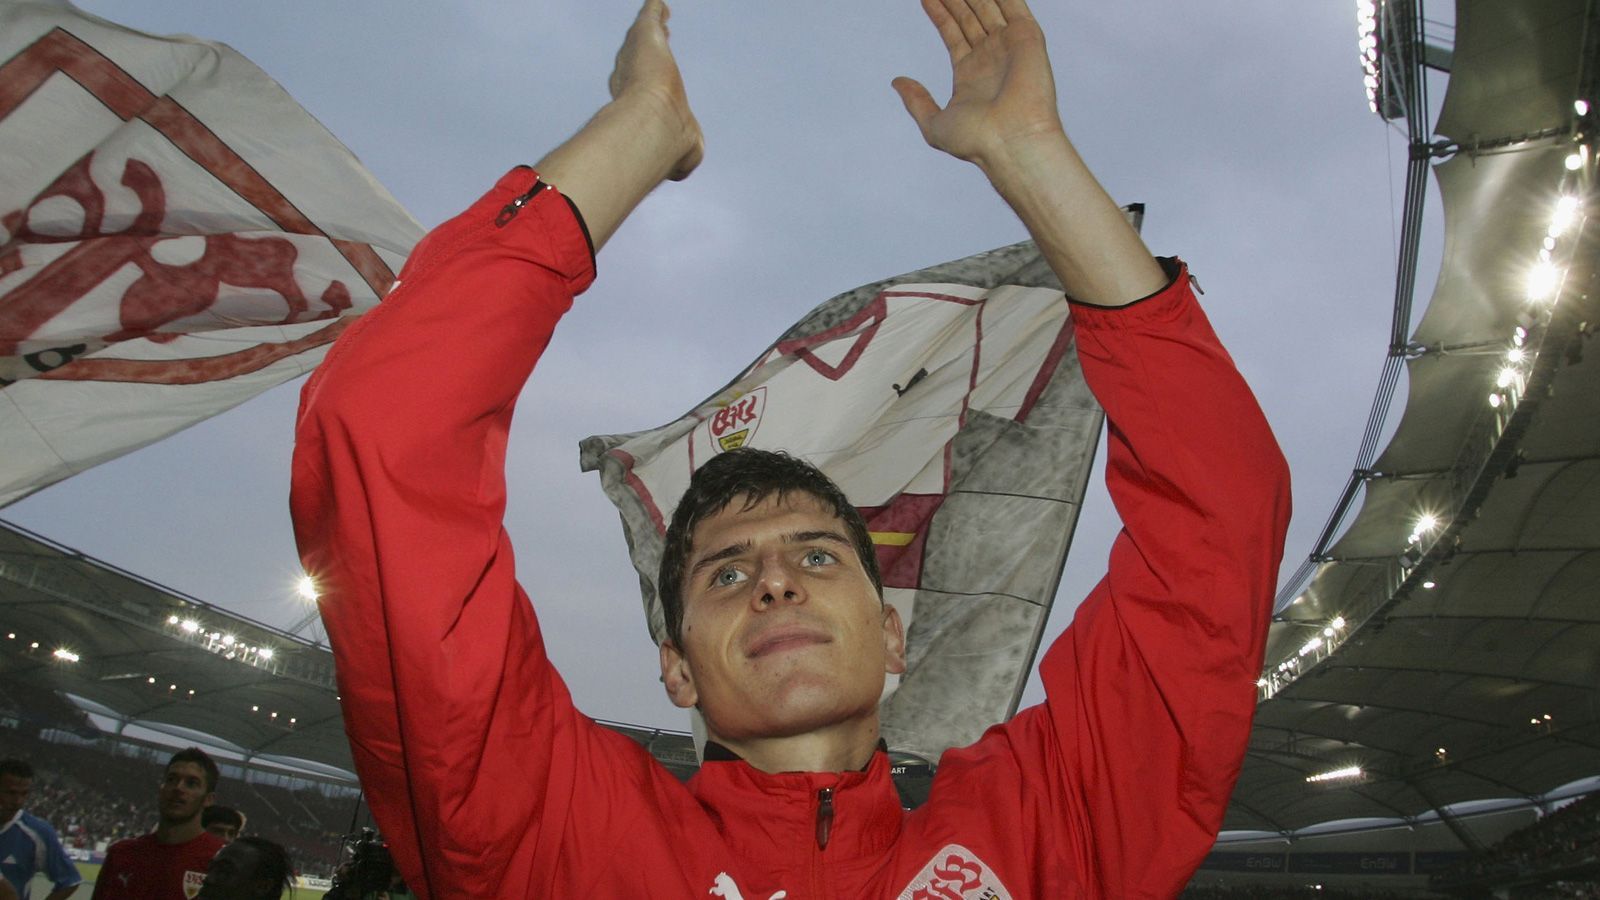 
                <strong>Durchbruch 2007</strong><br>
                Seinen Durchbruch feierte Gomez nur eine Saison später. Der damals 21-Jährige war absoluter Leistungsträger unter Armin Veh und stand dabei bis zu einer Verletzung mit 14 Toren sogar an der Spitze der Torjägerliste. Damit wurde auch der DFB auf Gomez aufmerksam ...
              